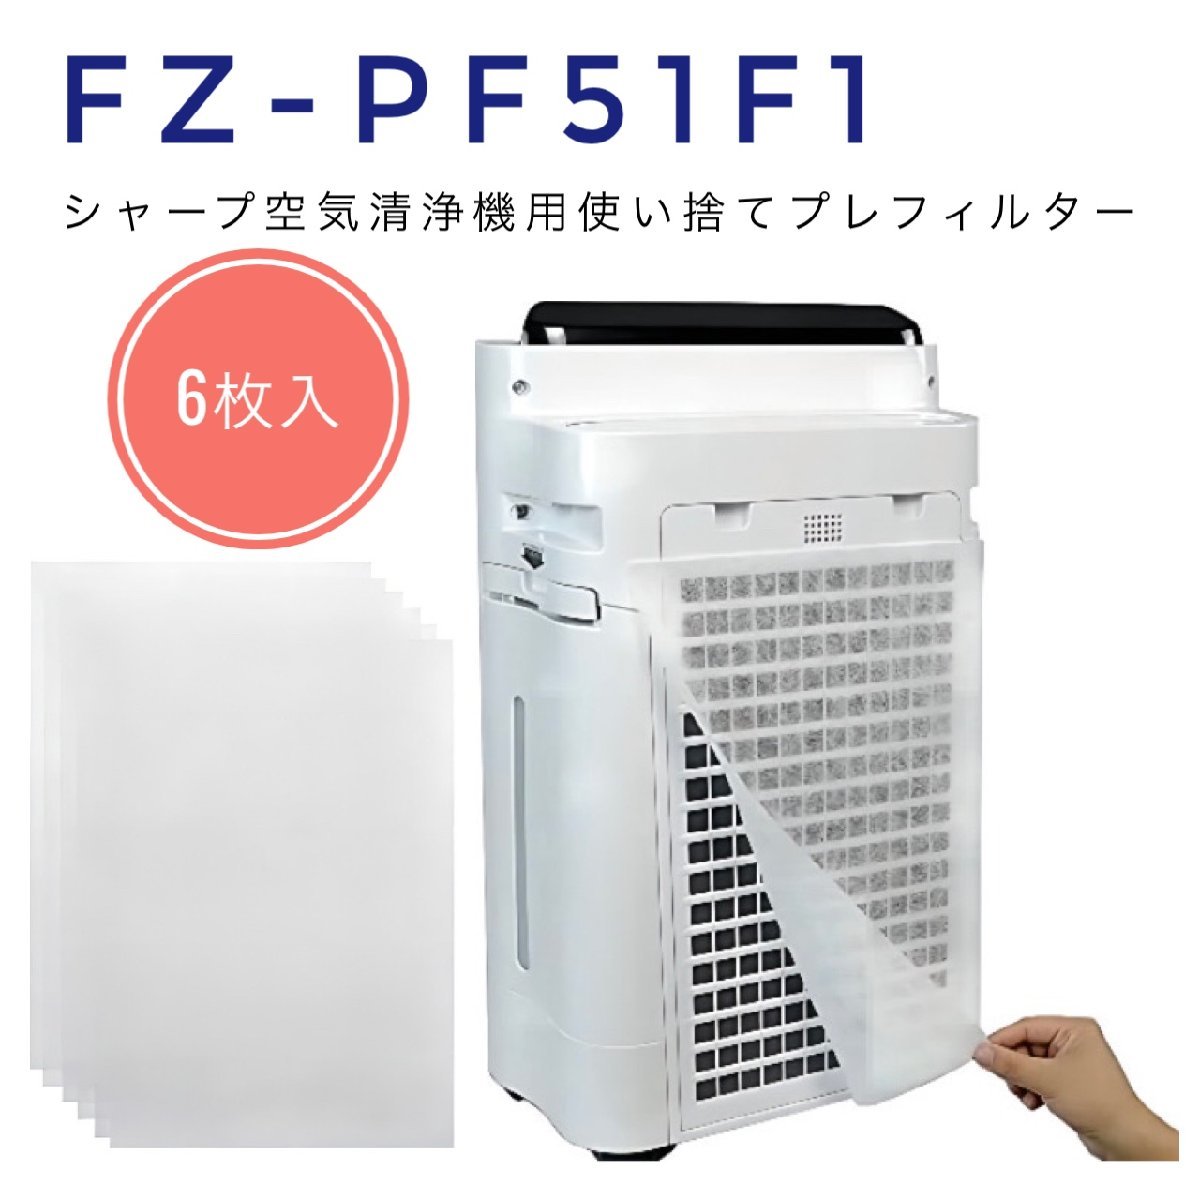 FZ-PF51F1 6枚入 シャープ SHARP 空気清浄機対応 使い捨てプレフィルター 空気清浄機互換部品 fzpf51f1 使い捨て フィルター 貼り付け用_画像1